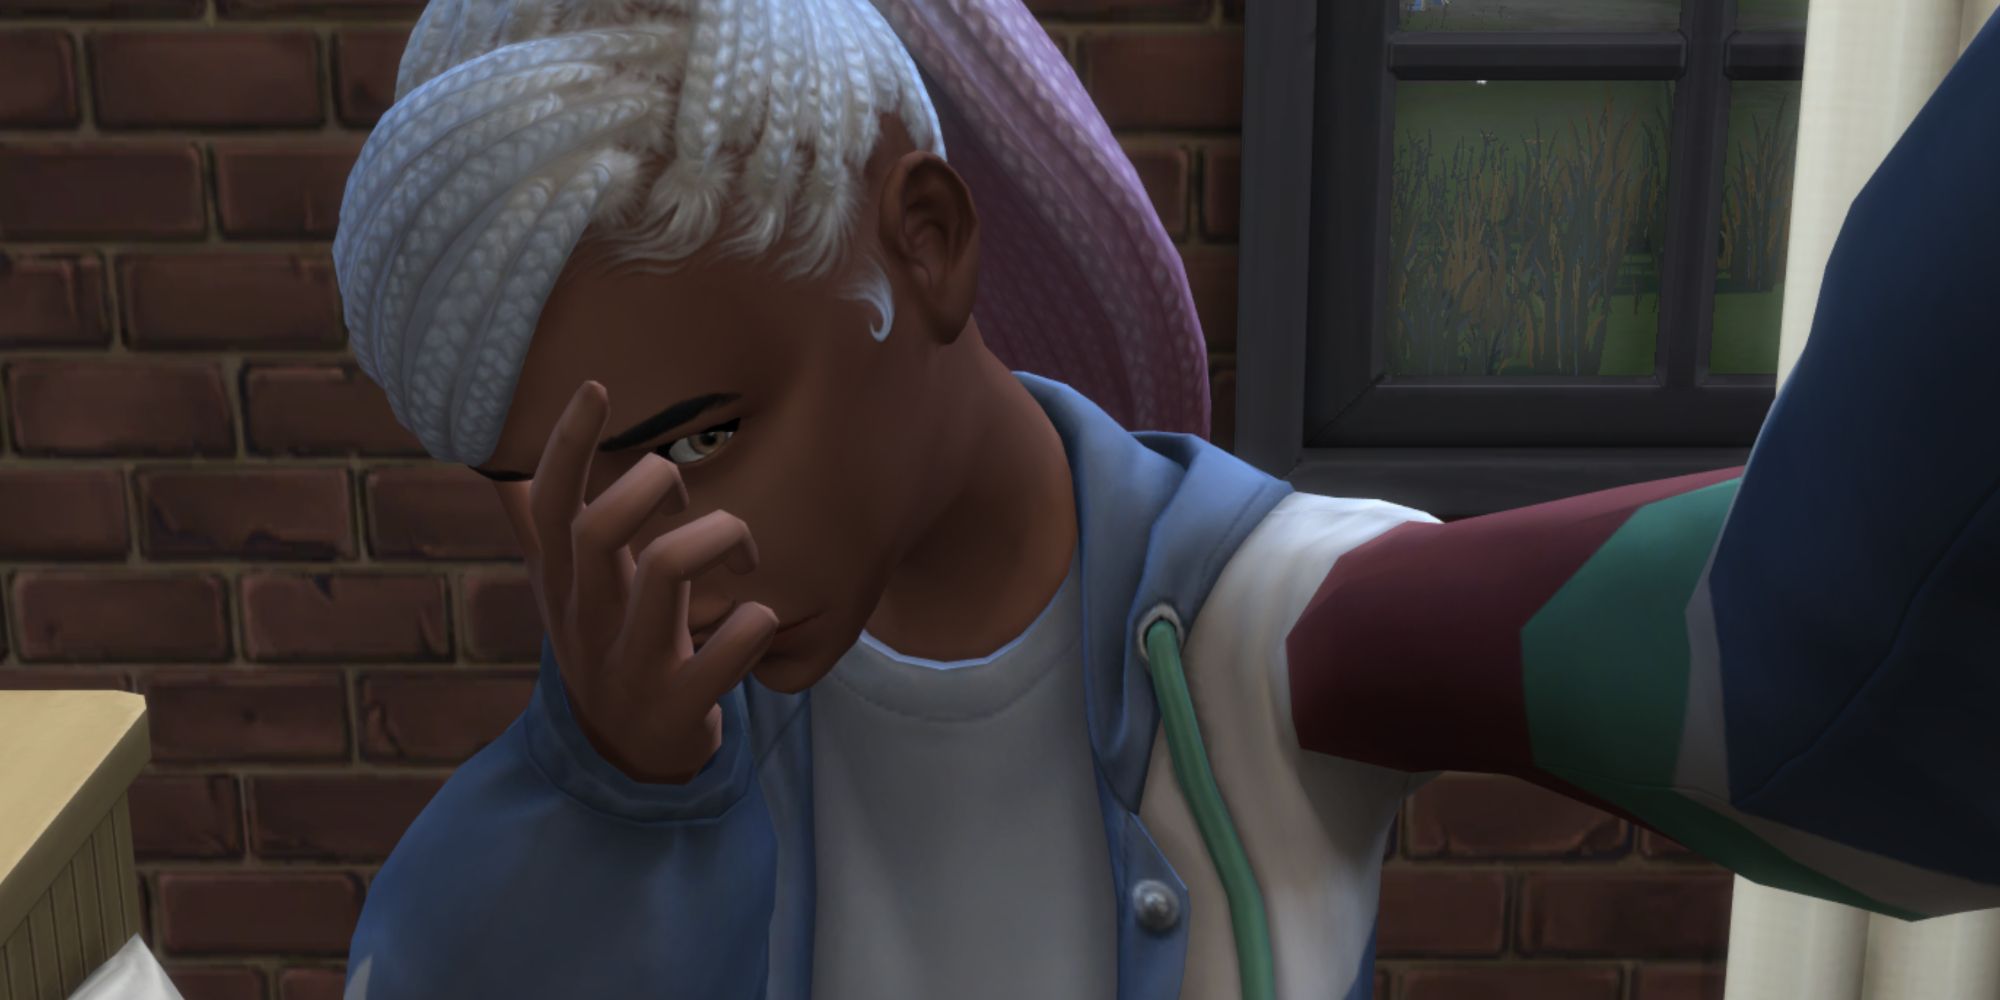 Sims 4 - Teen taking sad selfie